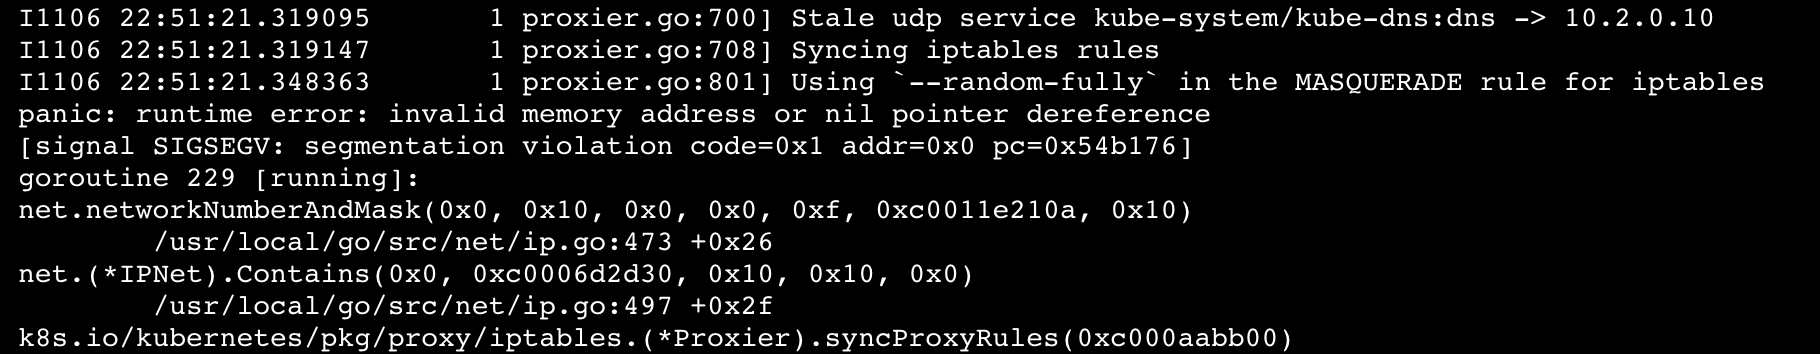 An error log of a failing DaemonSet